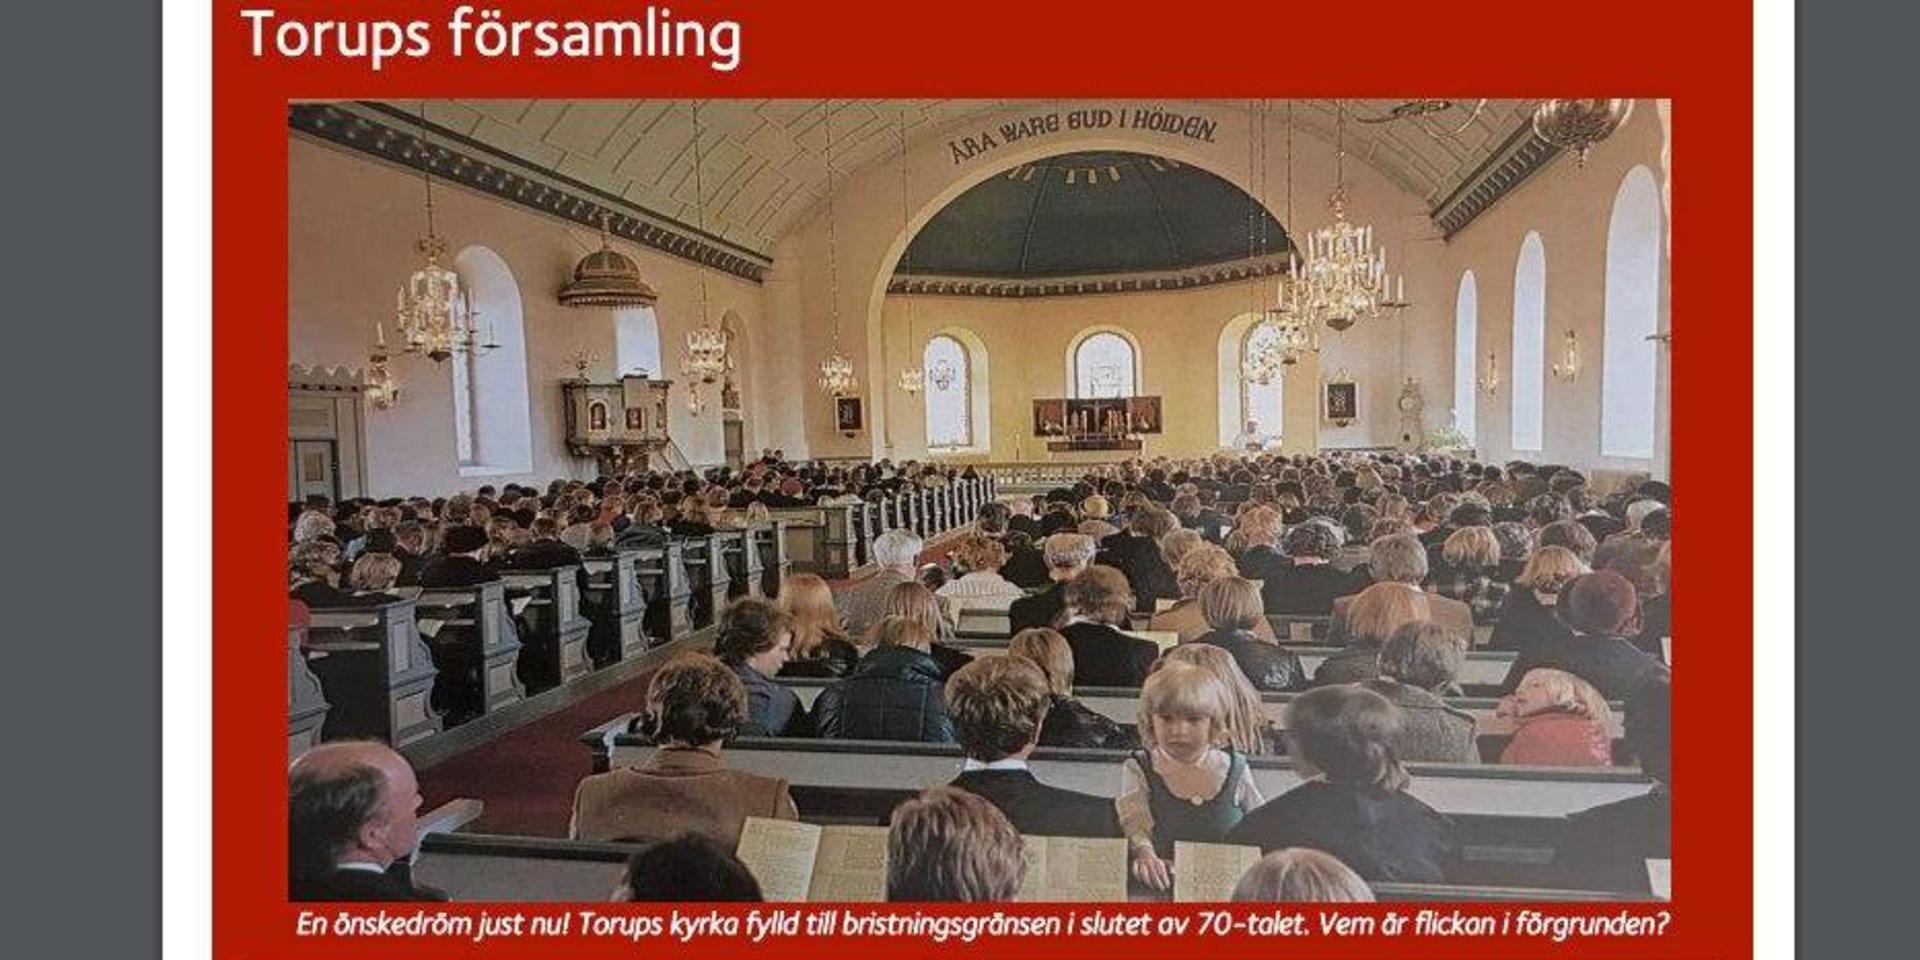 Församlingsbladet drömmer om fulla kyrkbänkar på nytt. Torups kyrka är en av de största &quot;tegnérladorna&quot; i trakten.